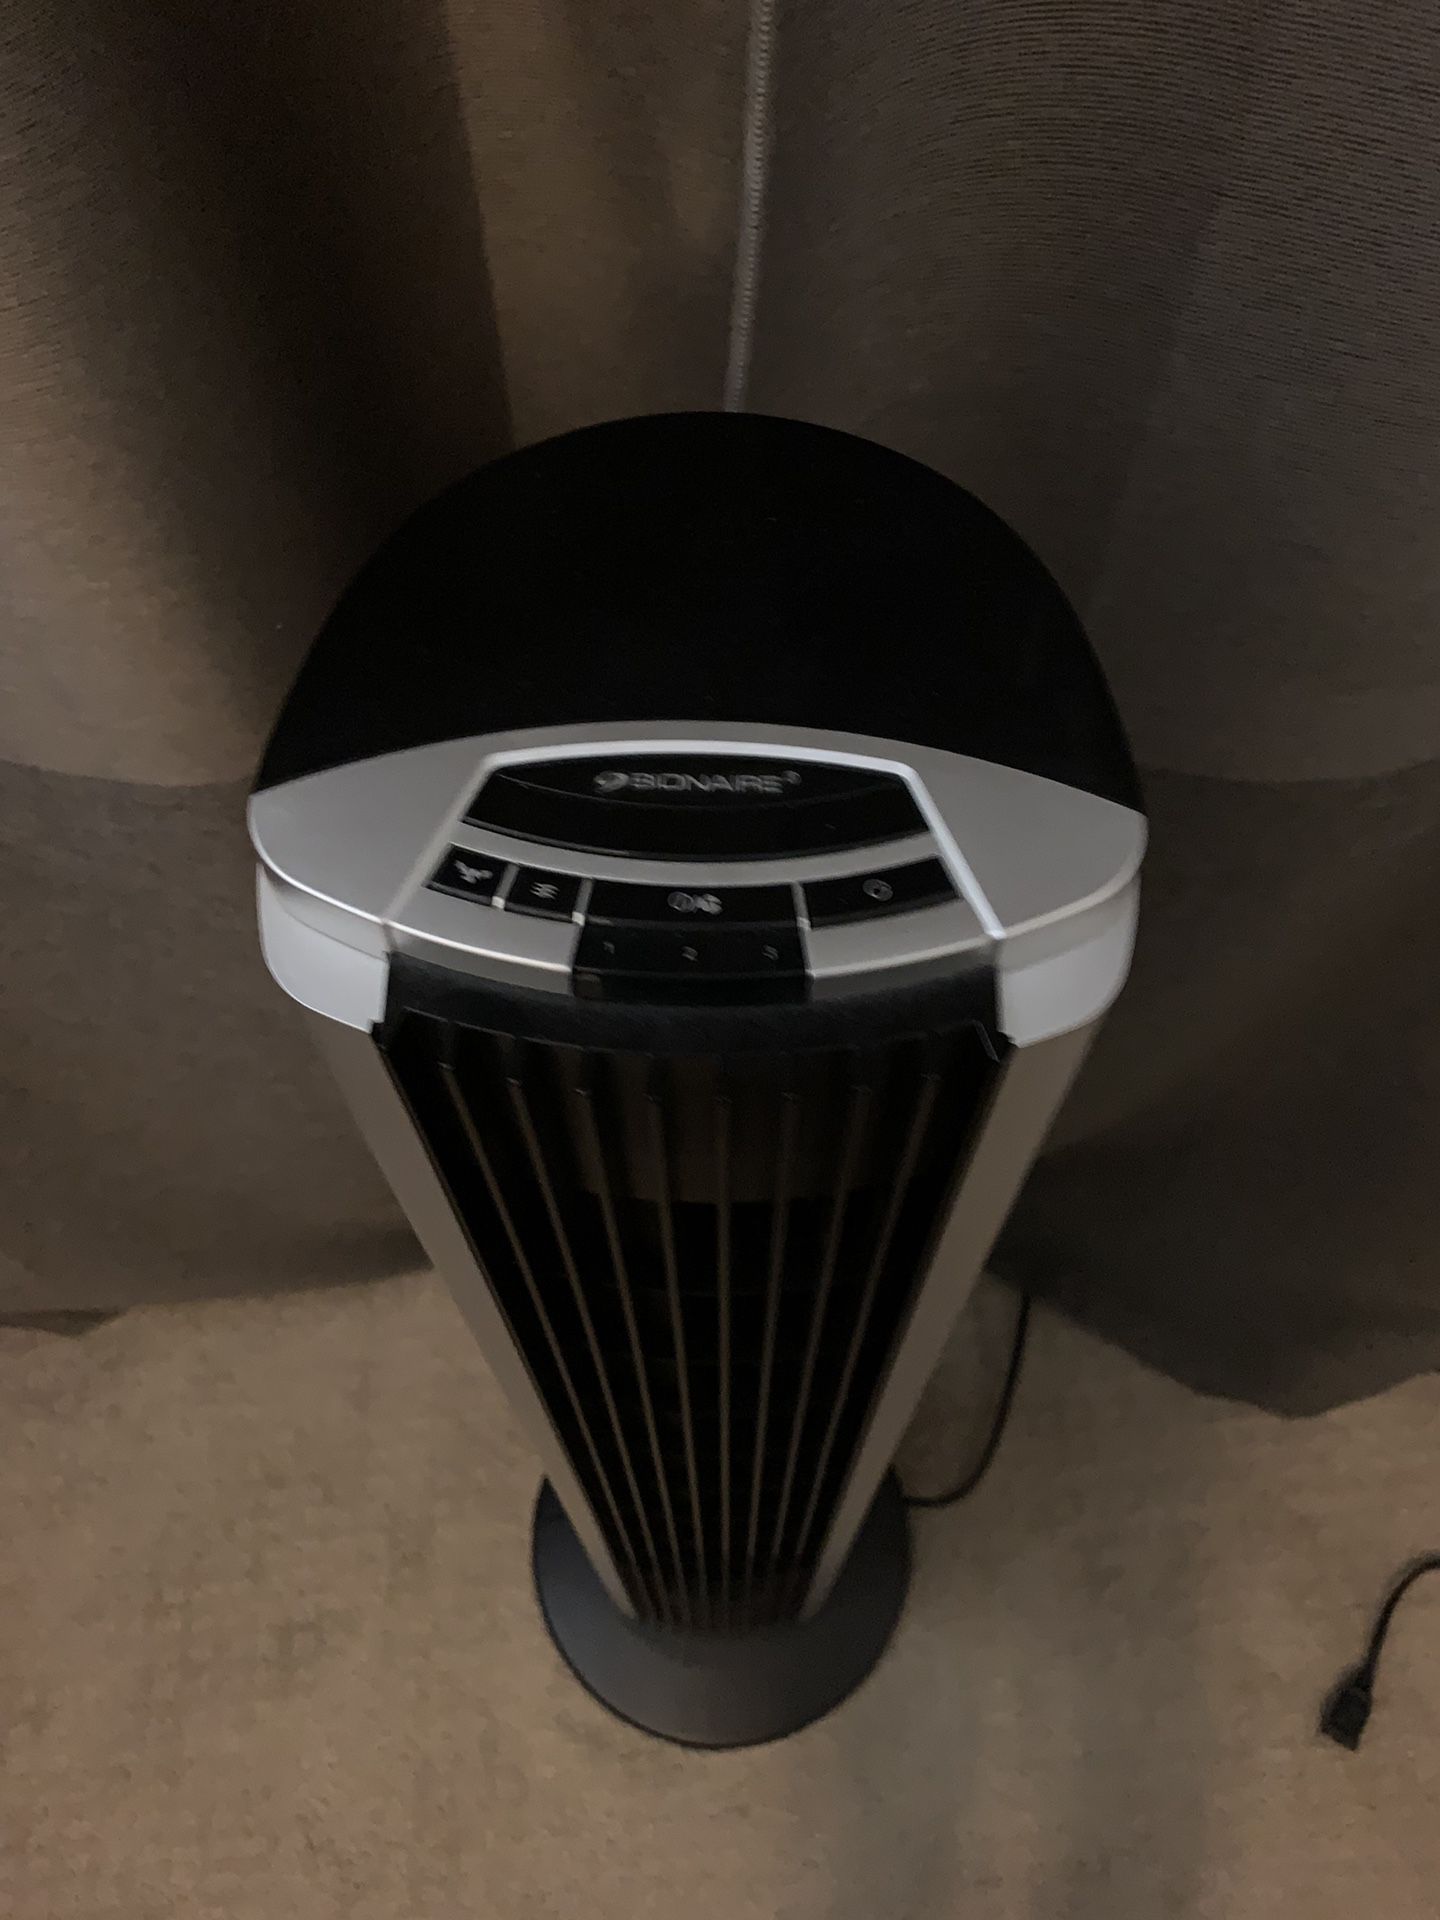 Portable fan+ tower fan